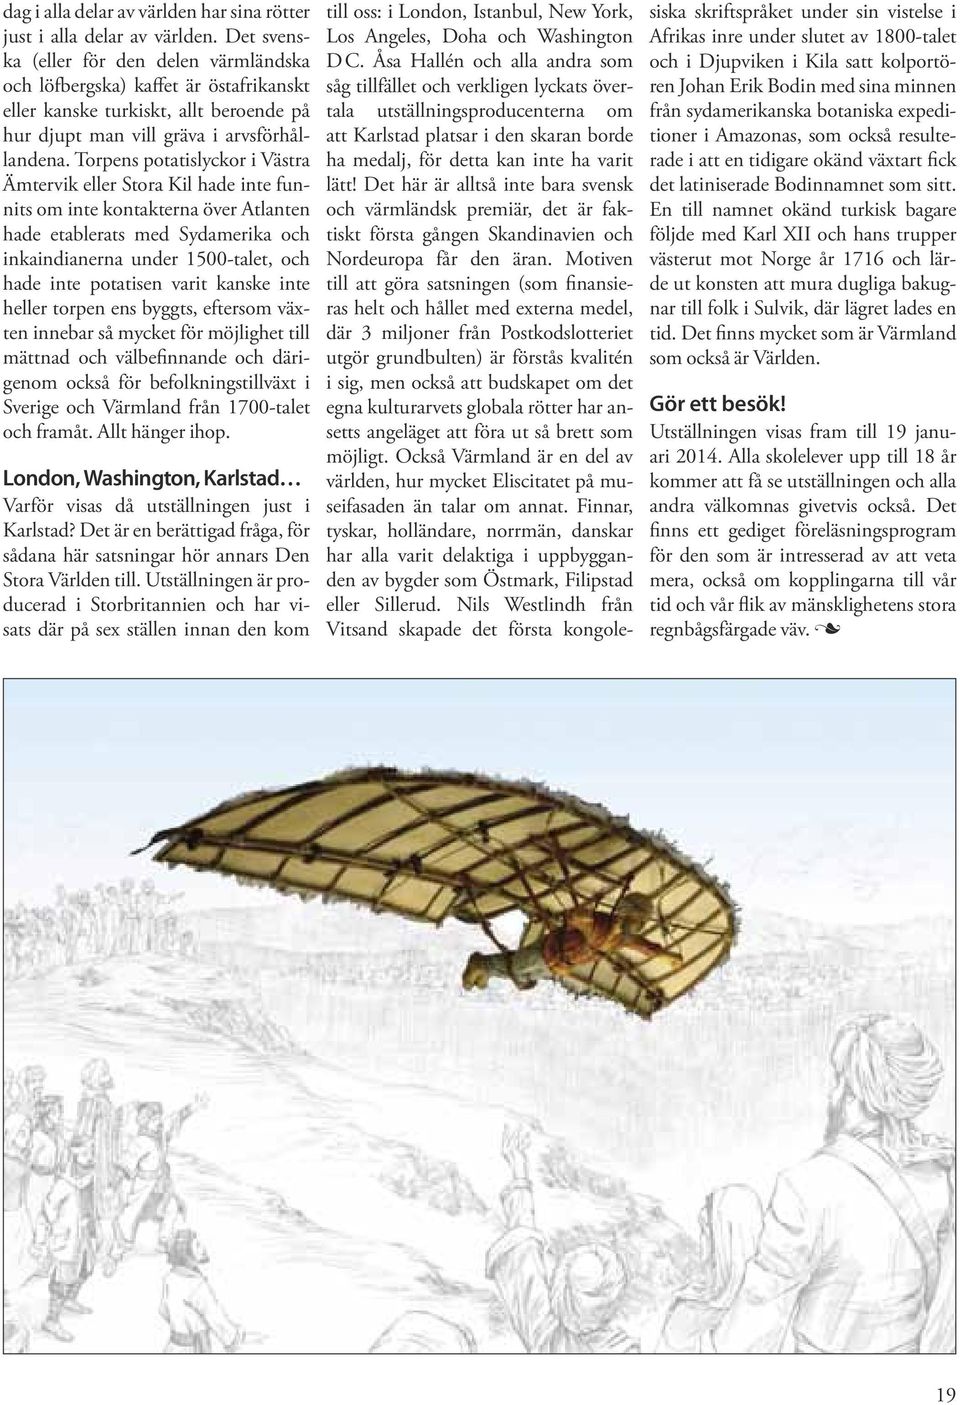 Torpens potatislyckor i Västra Ämtervik eller Stora Kil hade inte funnits om inte kontakterna över Atlanten hade etablerats med Sydamerika och inkaindianerna under 1500-talet, och hade inte potatisen